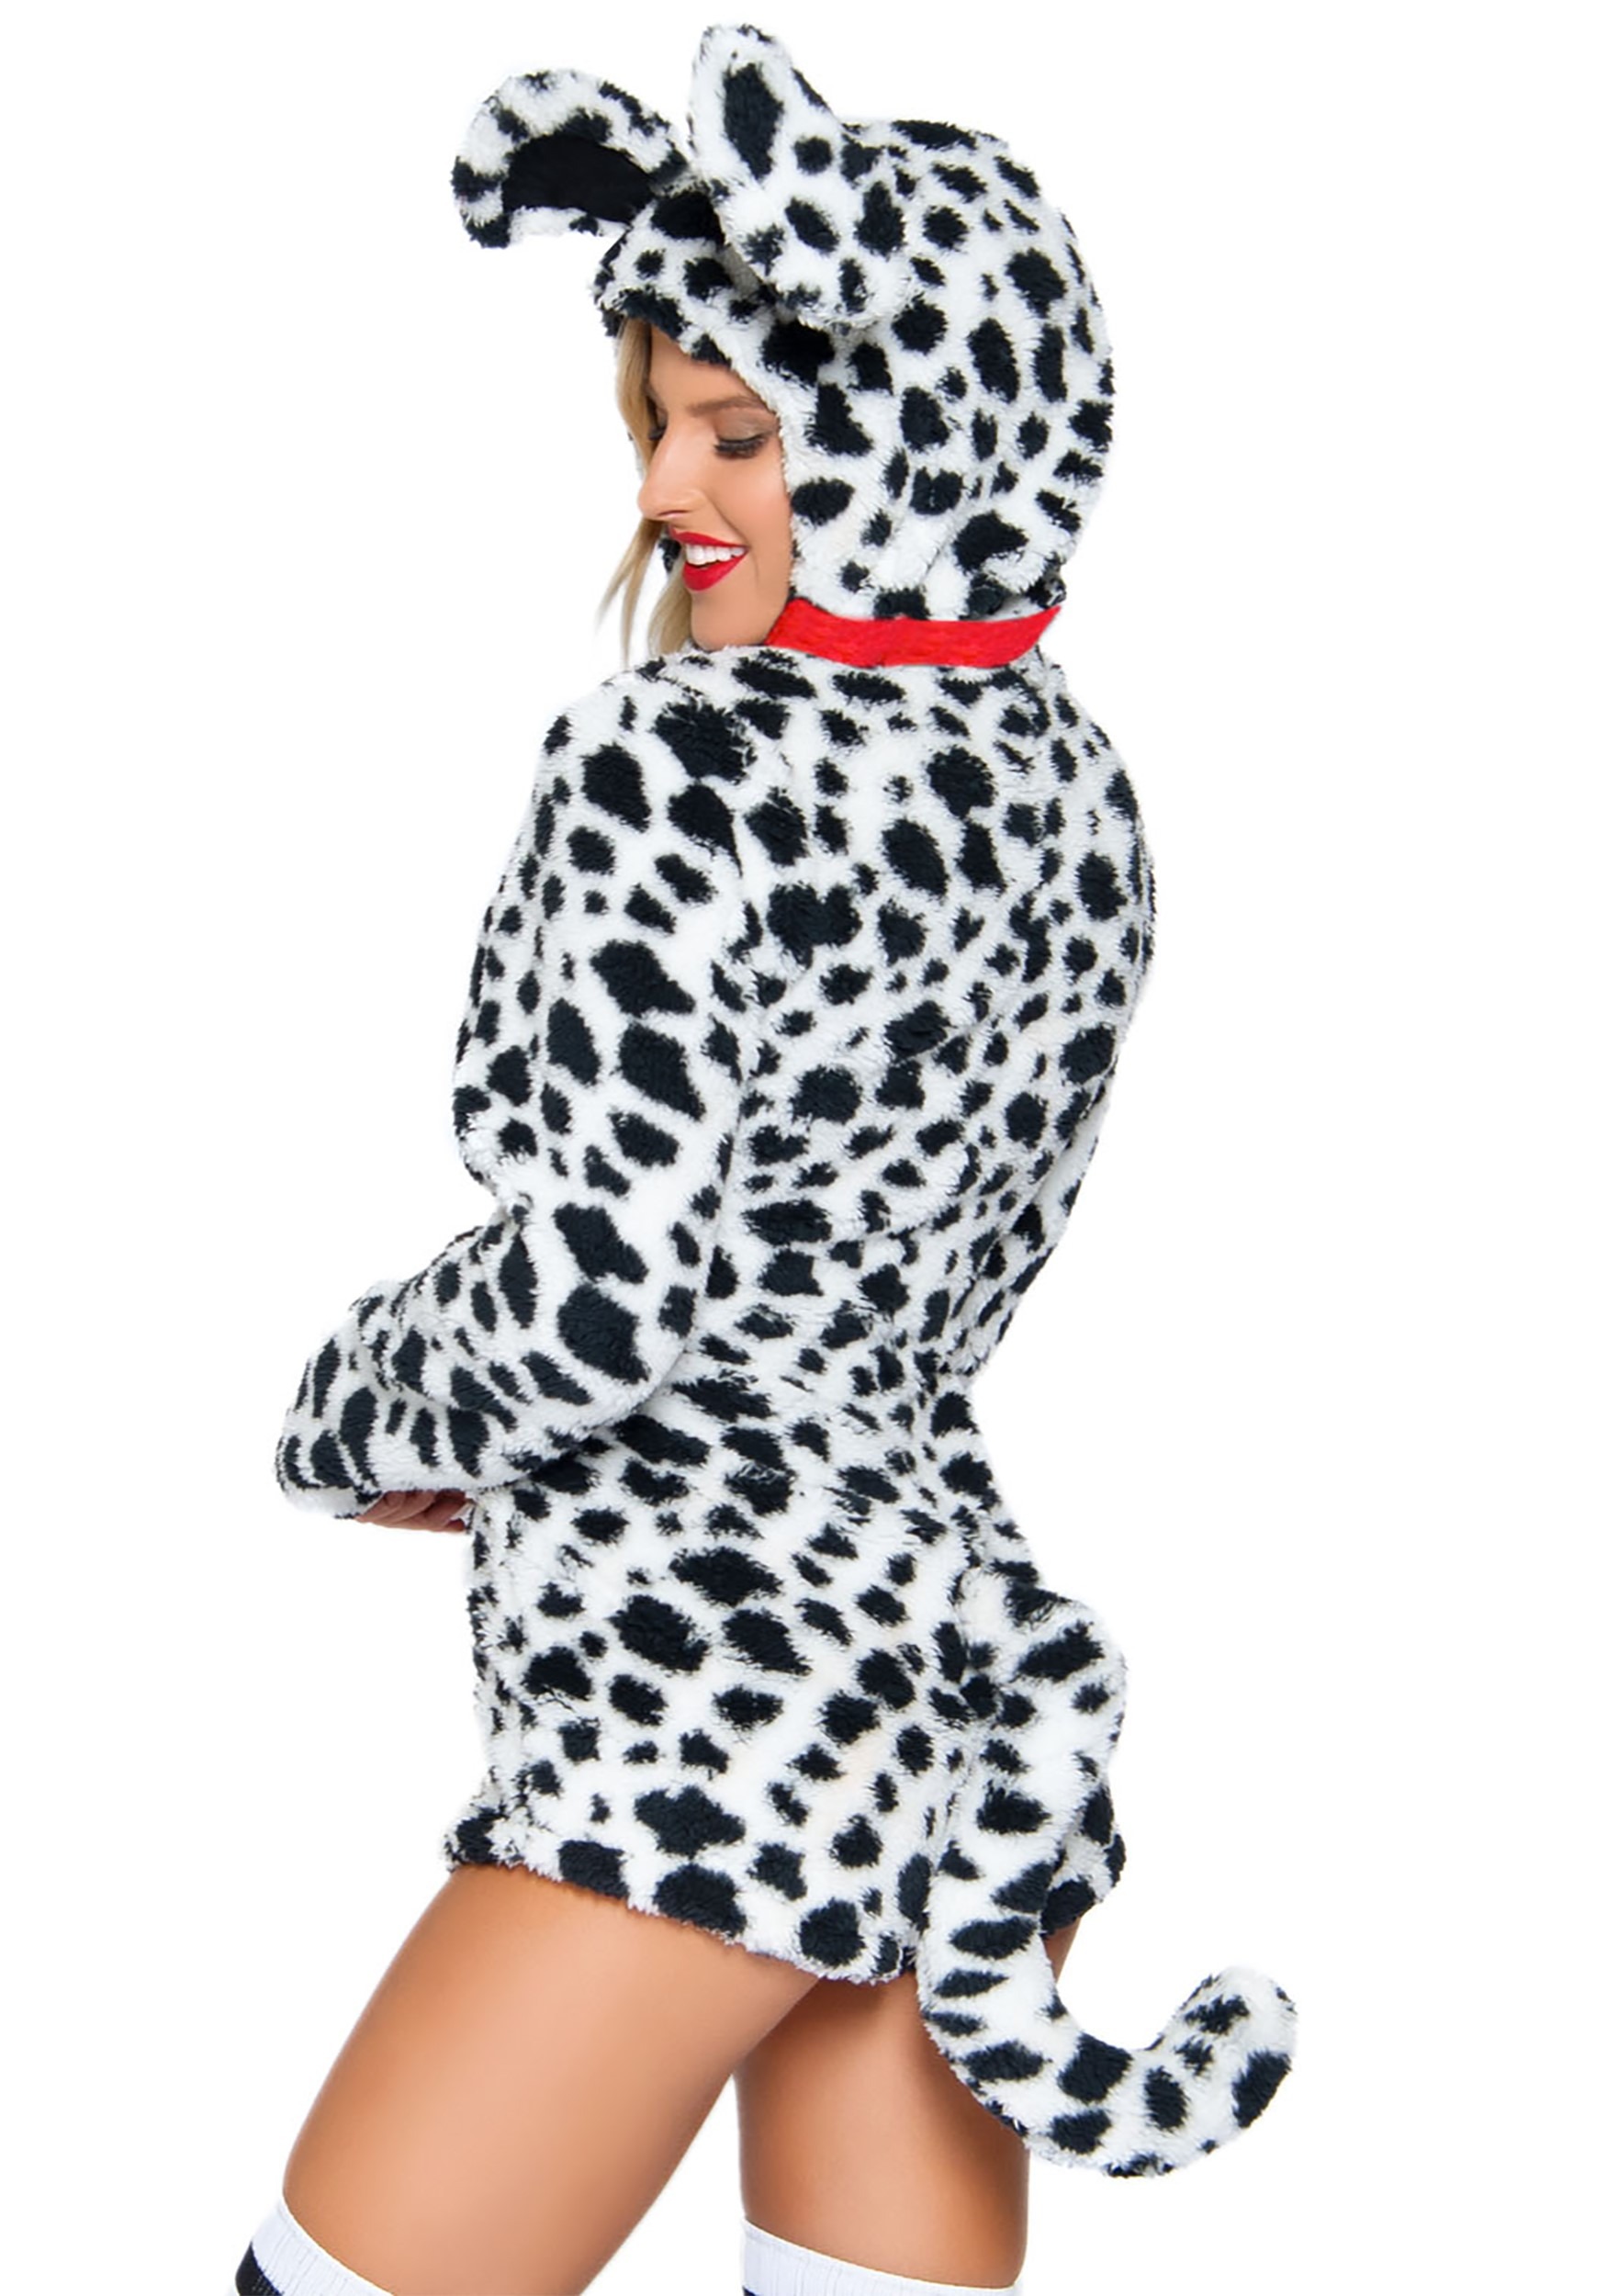 Darling Dalmatian Costume For Women